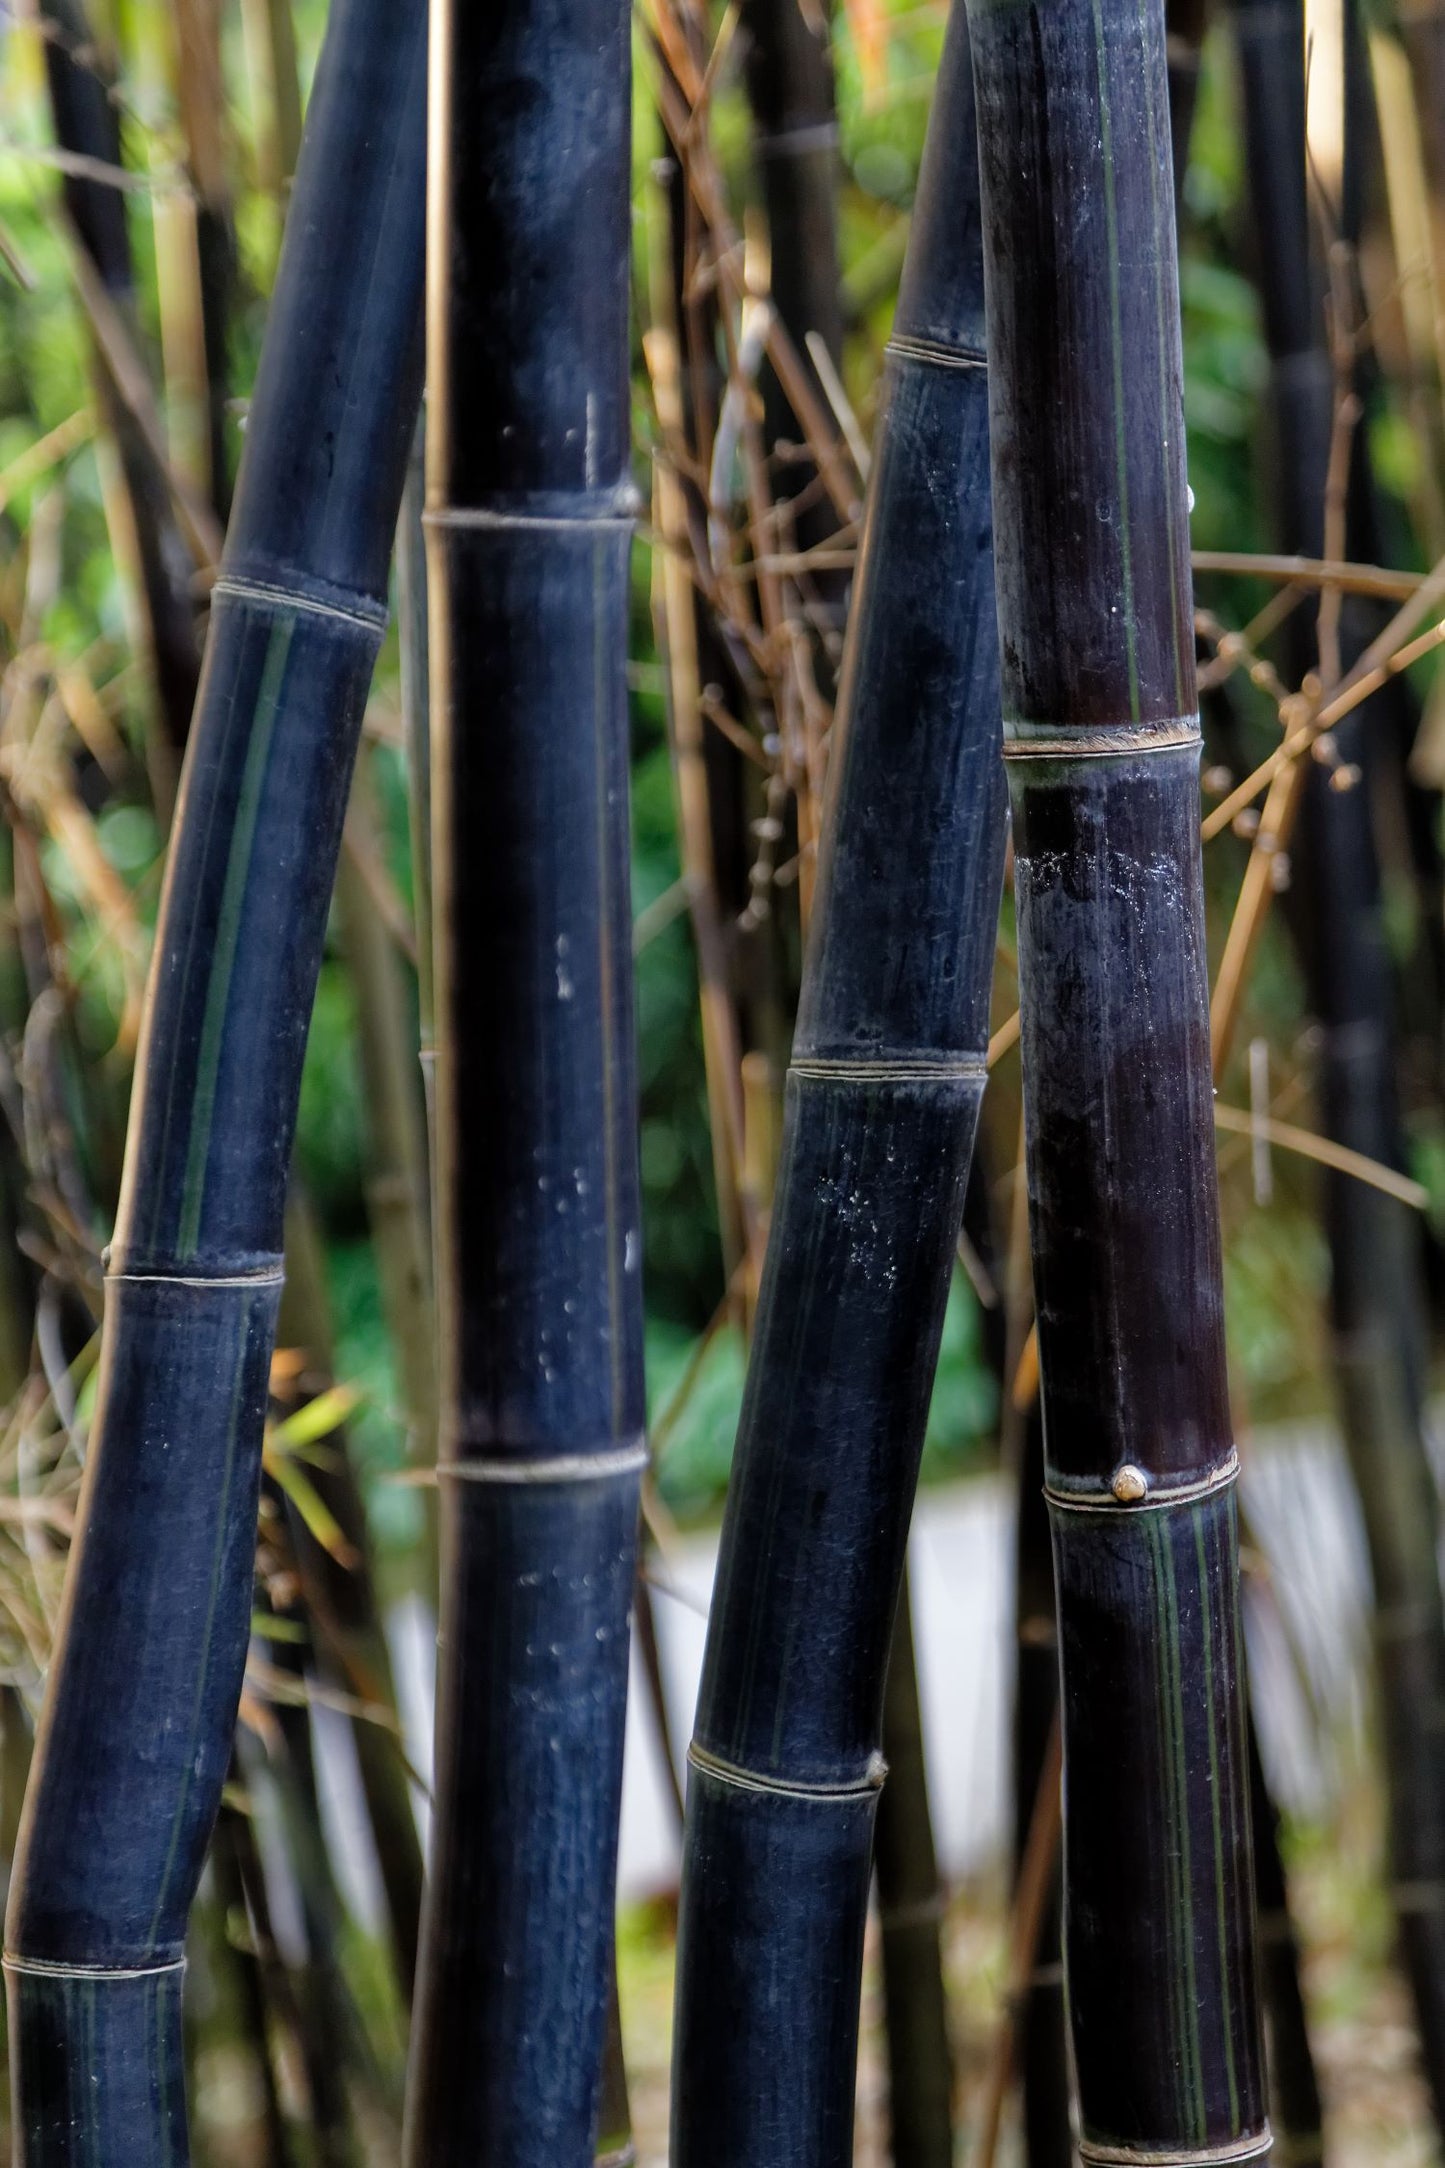 Bambou (Phyllostachys) Nigra